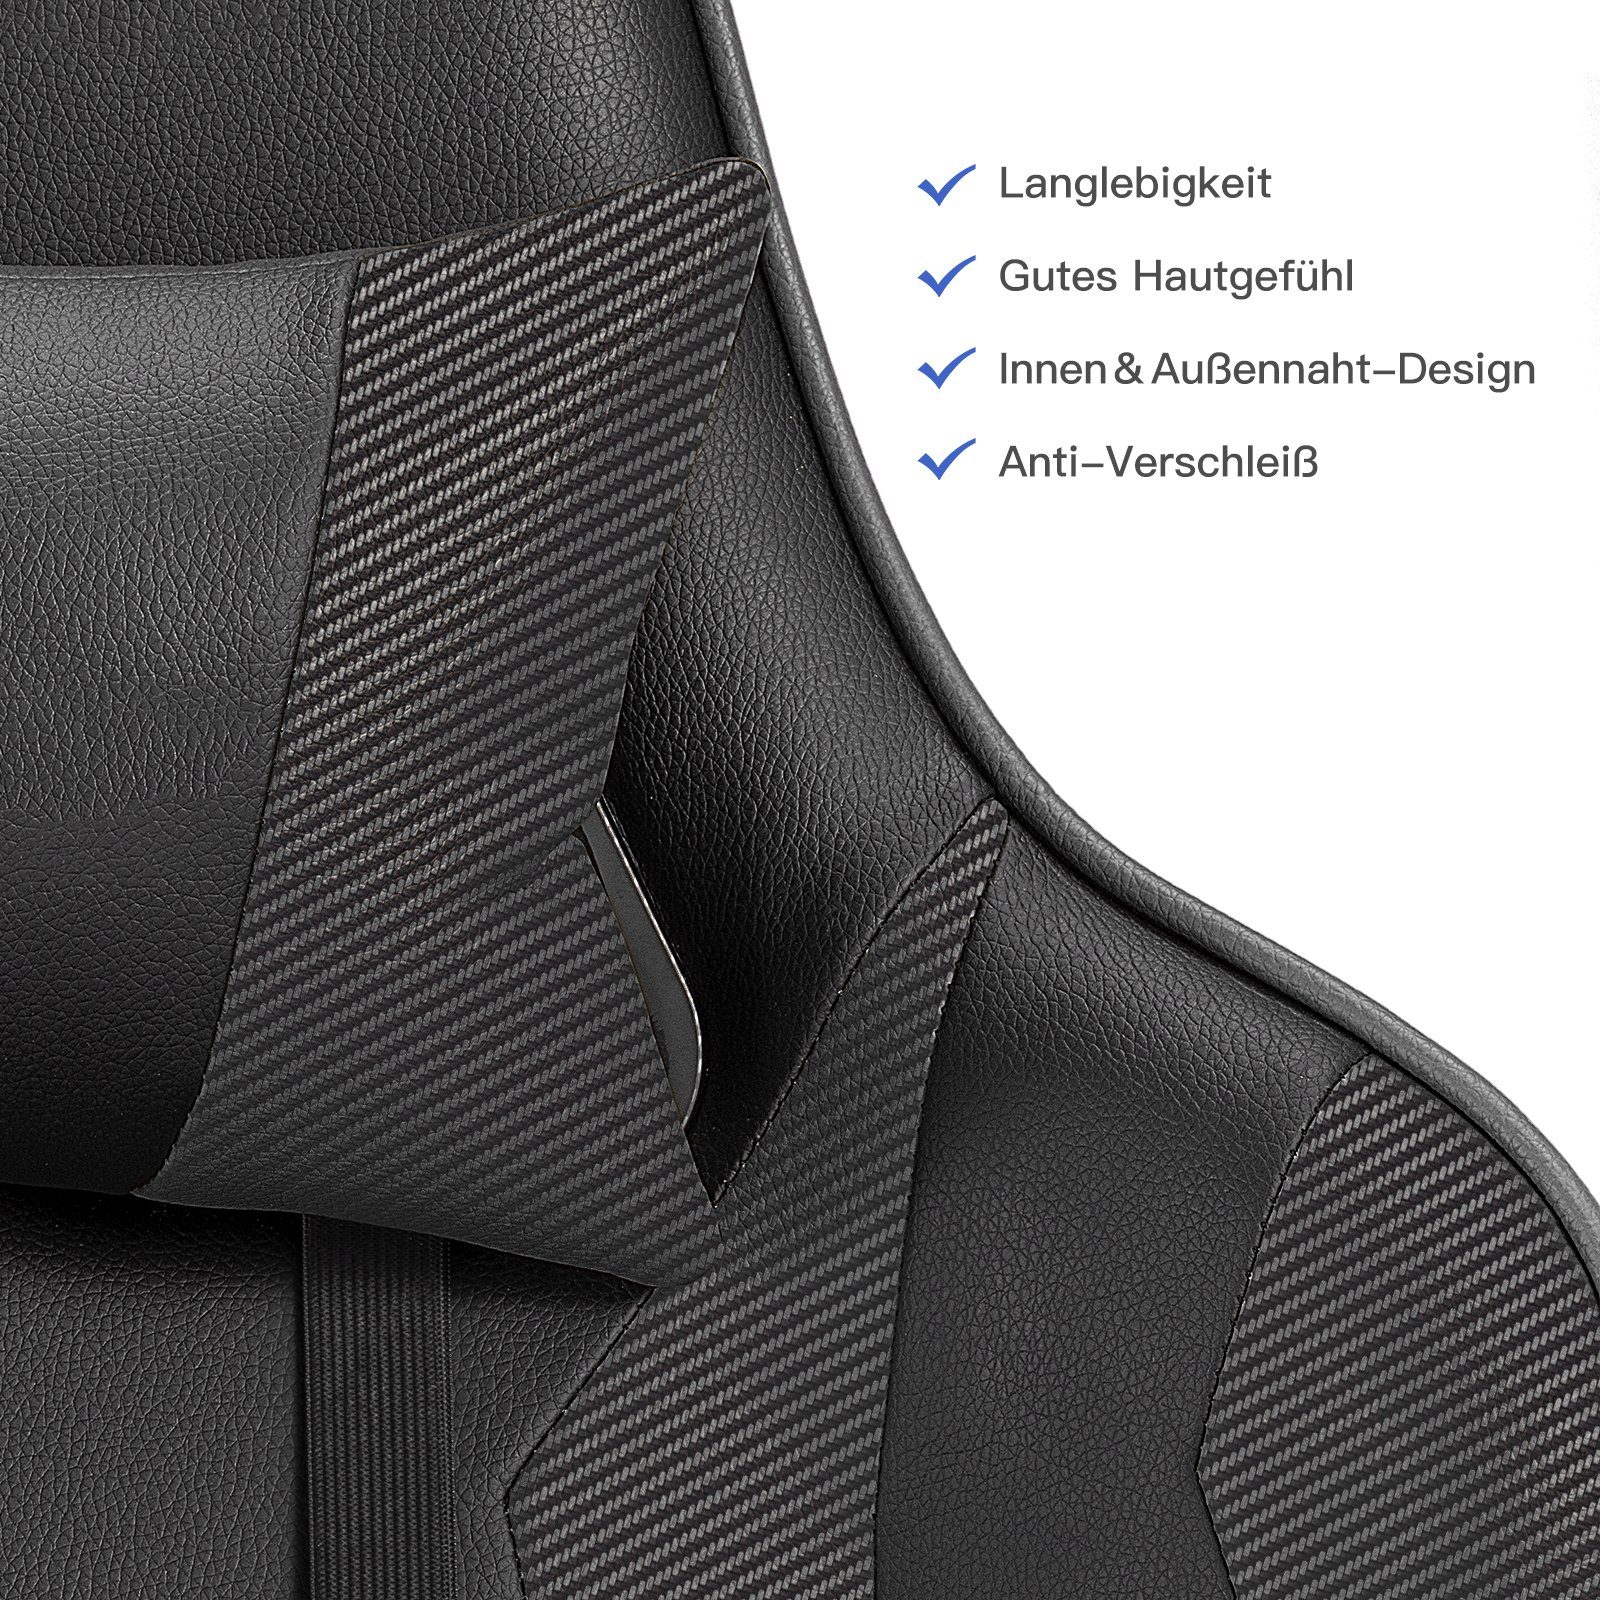 GTPLAYER Gaming-Stuhl Bürostuhl Ergonomische Design waist reclining the The Lenden- function inkl. Nackenkissen, supports und schwarz